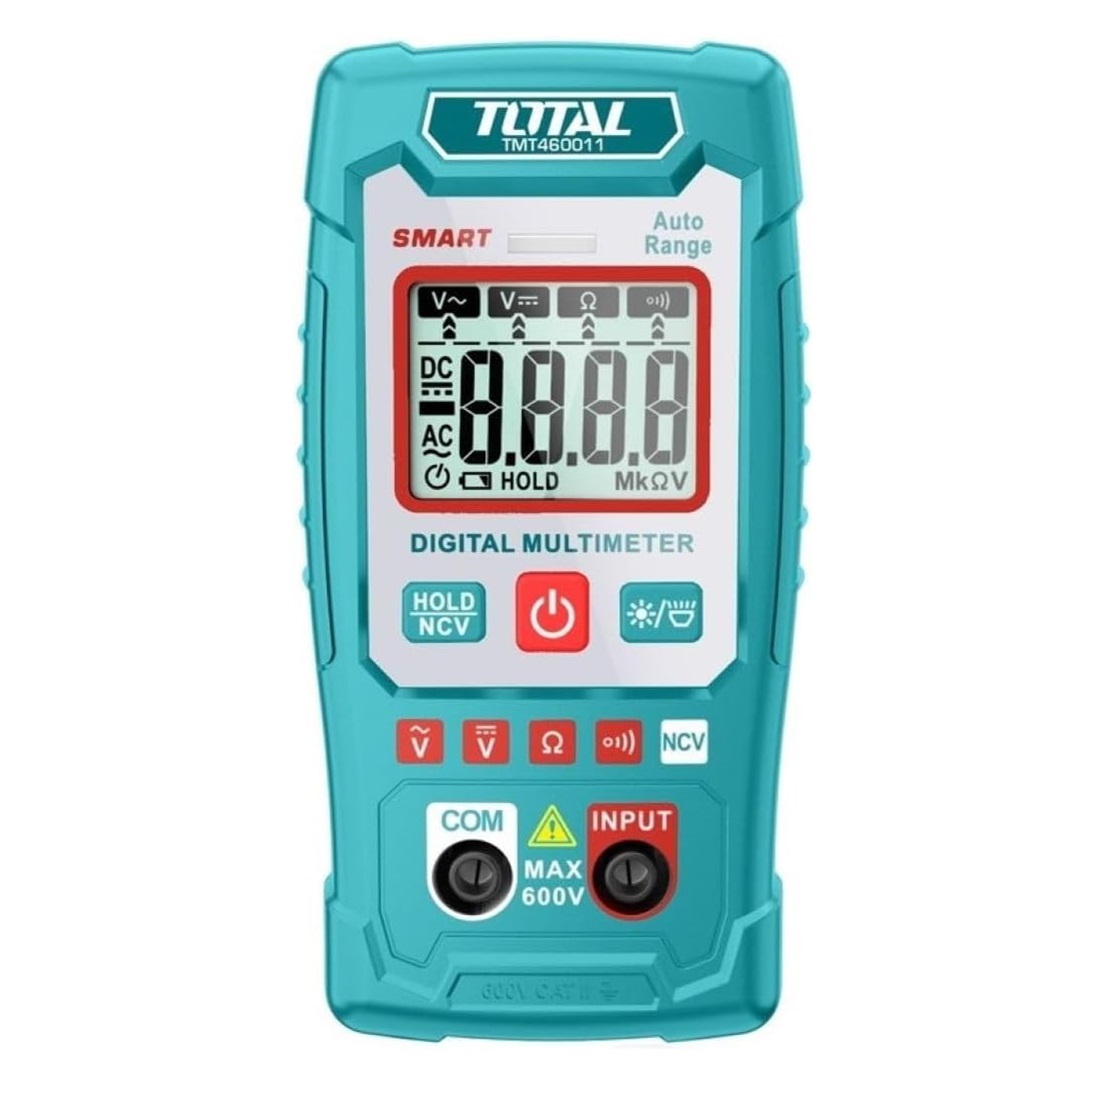 Đồng hồ đo điện vạn năng TOTAL TMT460011 - độ chính xác cao, màn hình LCD 2000 số đếm, có đèn nền ban đêm, có kèm pin